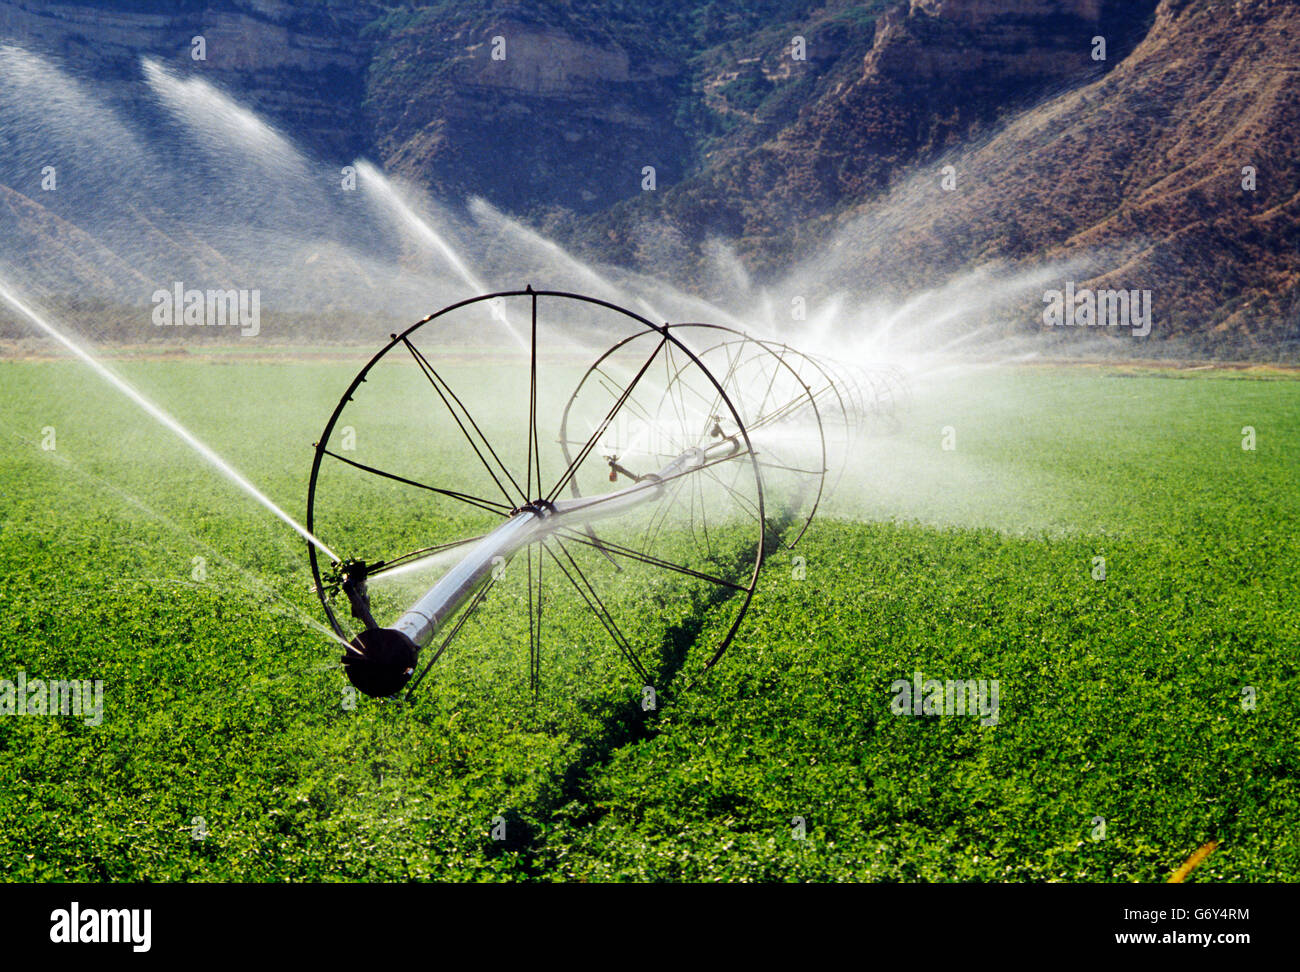 Système D'irrigation D'arrosage Pulvérisation D'eau Sur Le Terrain Photo  stock - Image du irriguez, zone: 221474910